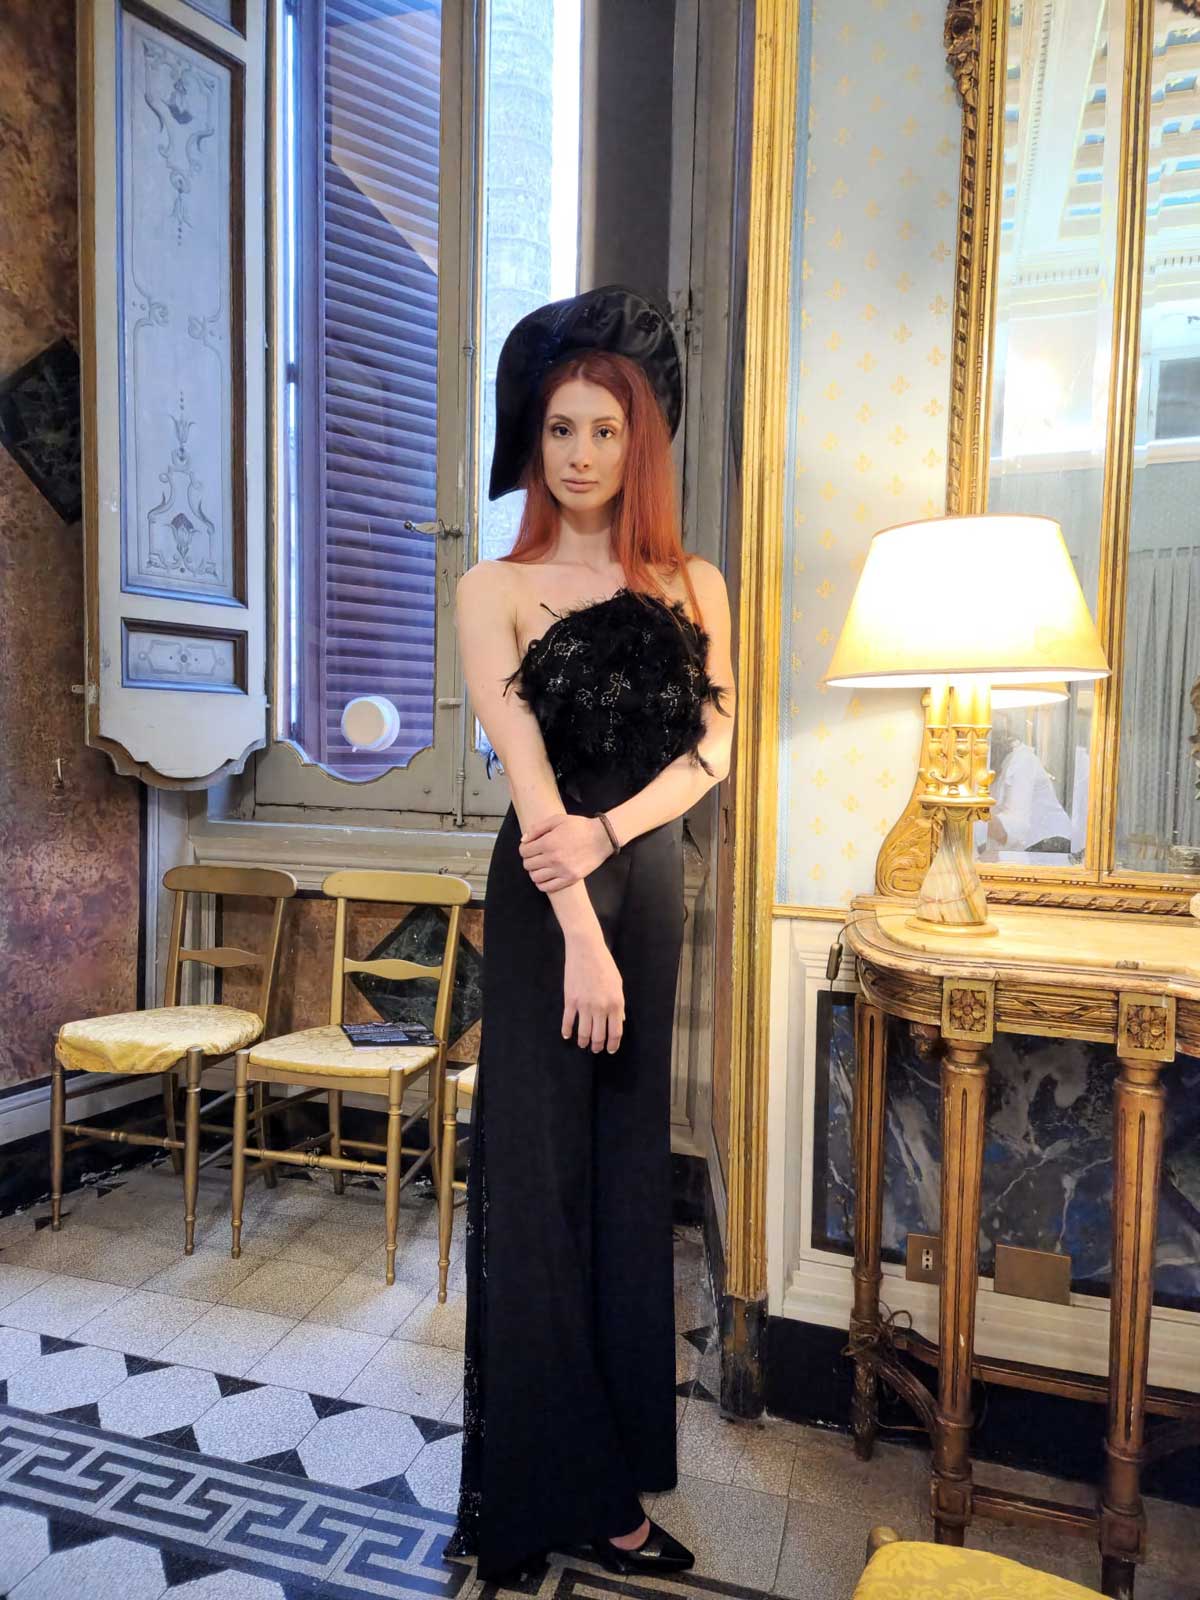 Sfilata abiti donna modelle a Palazzo Ferrajoli - Elins Moda - abiti sartoriali con cappello elegante nero